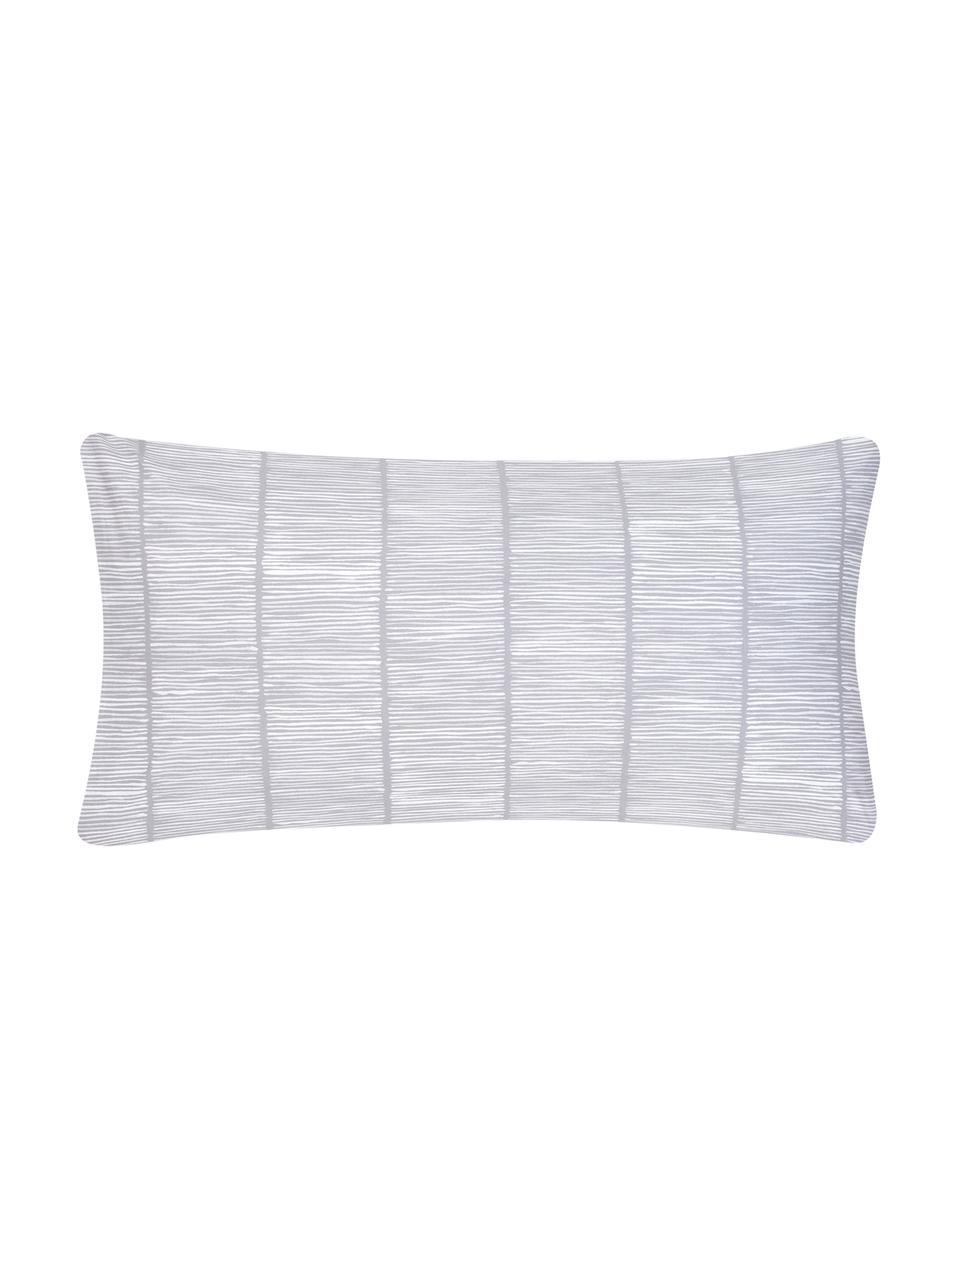 Poszewka na poduszkę z bawełny renforcé Paulina, 2 szt., Szary, biały, S 40 x D 80 cm